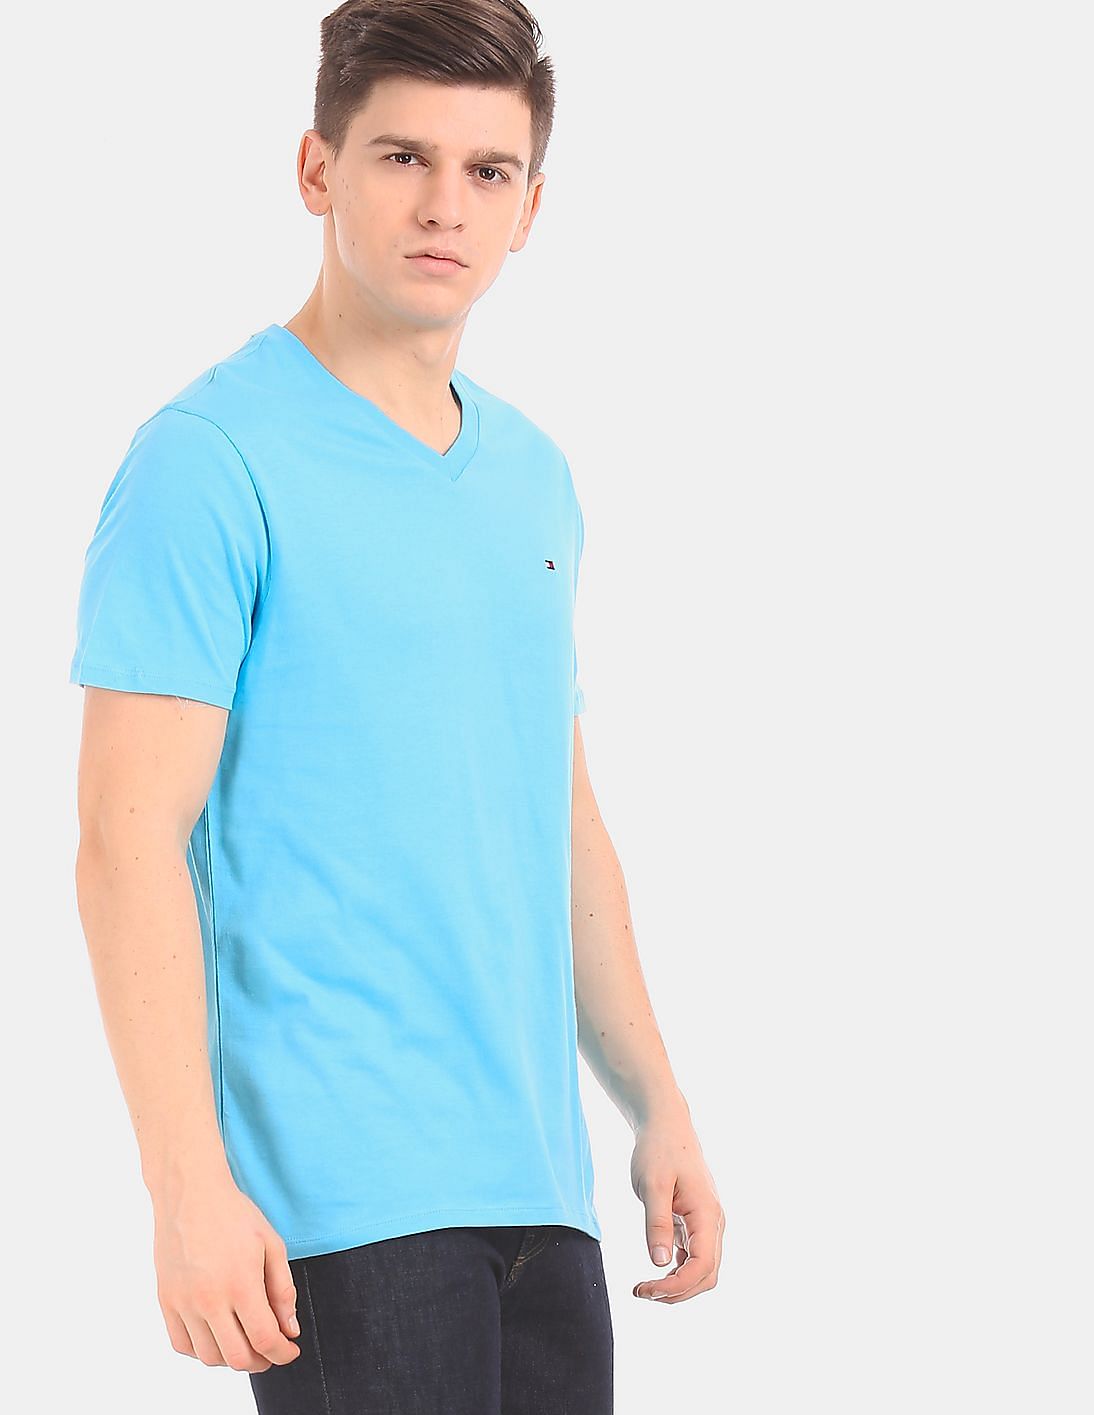 Buy Tommy Hilfiger Men Men Blue V-Neck Solid T-Shirt - NNNOW.com